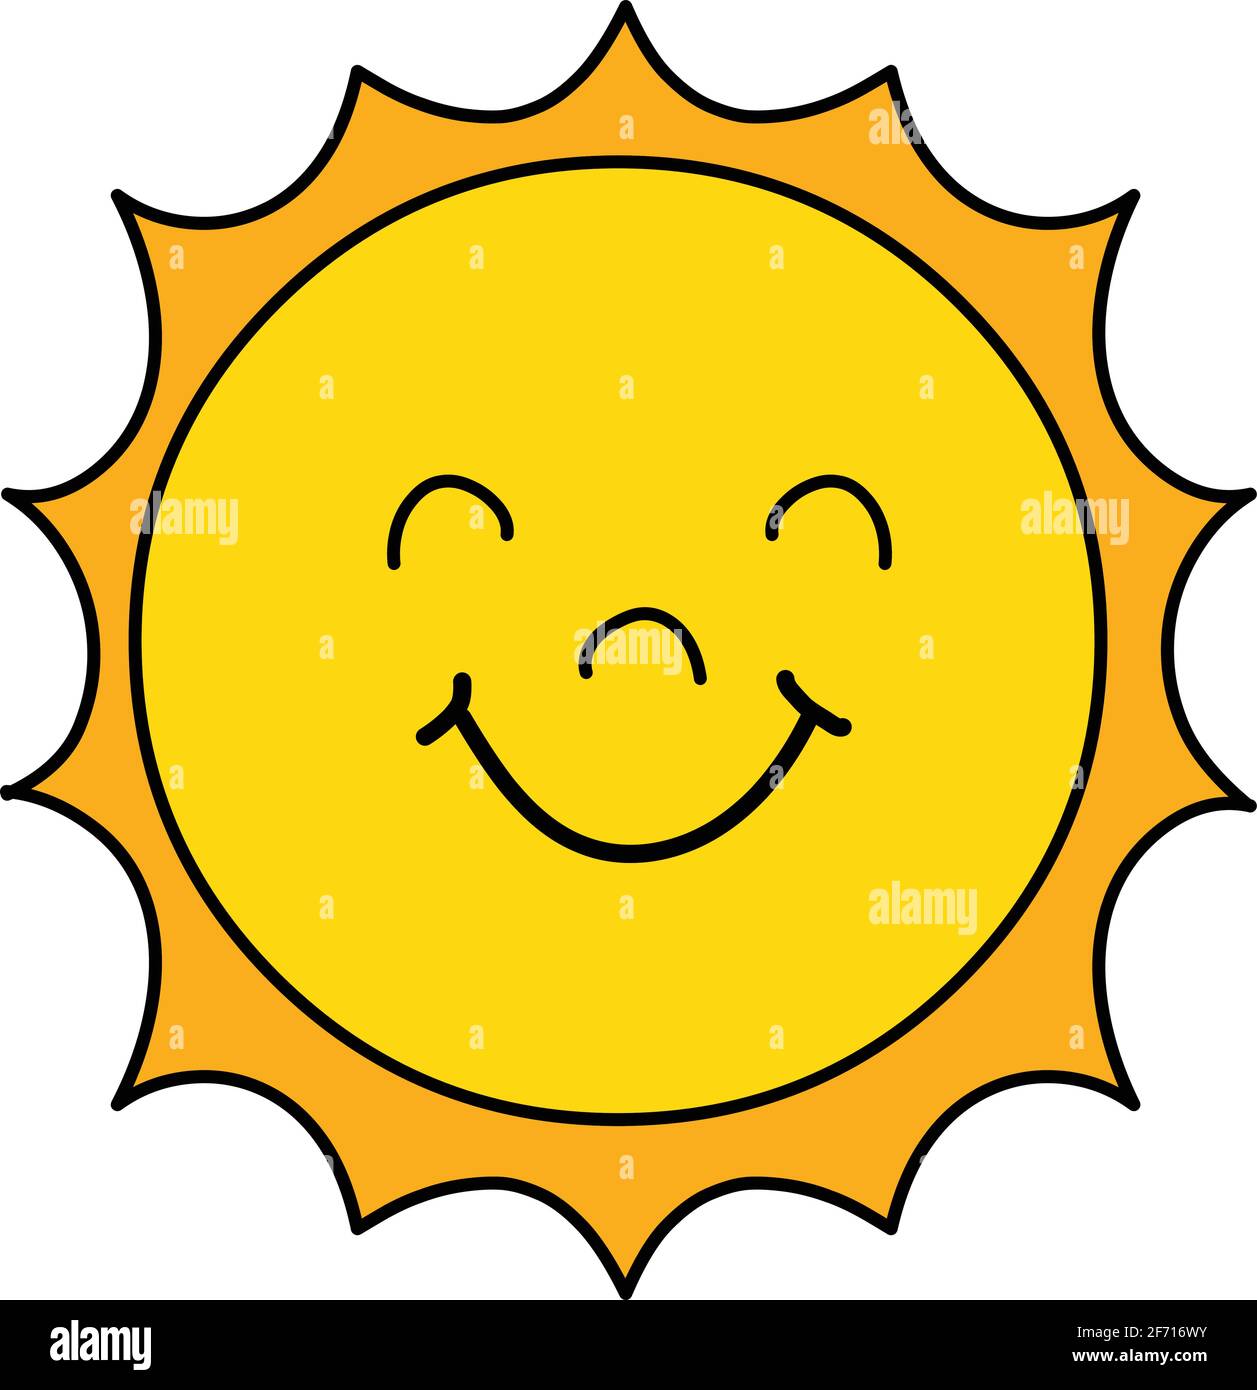 Sun ähnliche Logo Vektor-Illustration isoliert auf weißem Hintergrund Stock Vektor